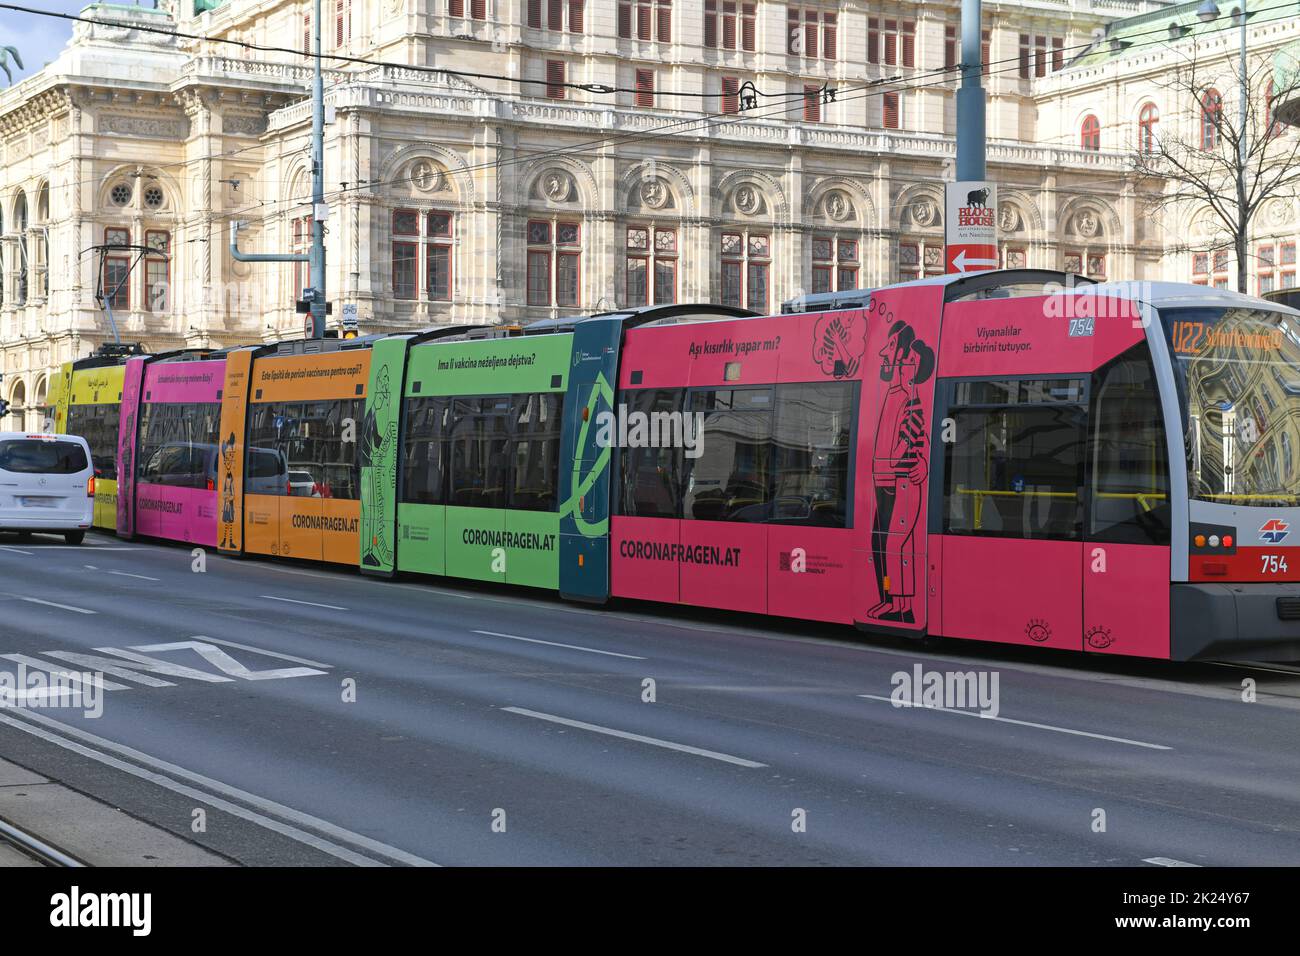 Bunte Straßenbahn in Wien mit mehrsprachiger Aufschrift zu Coronafragen, Österreich - Colorful tram in Vienna with multilingual inscription on corona Stock Photo